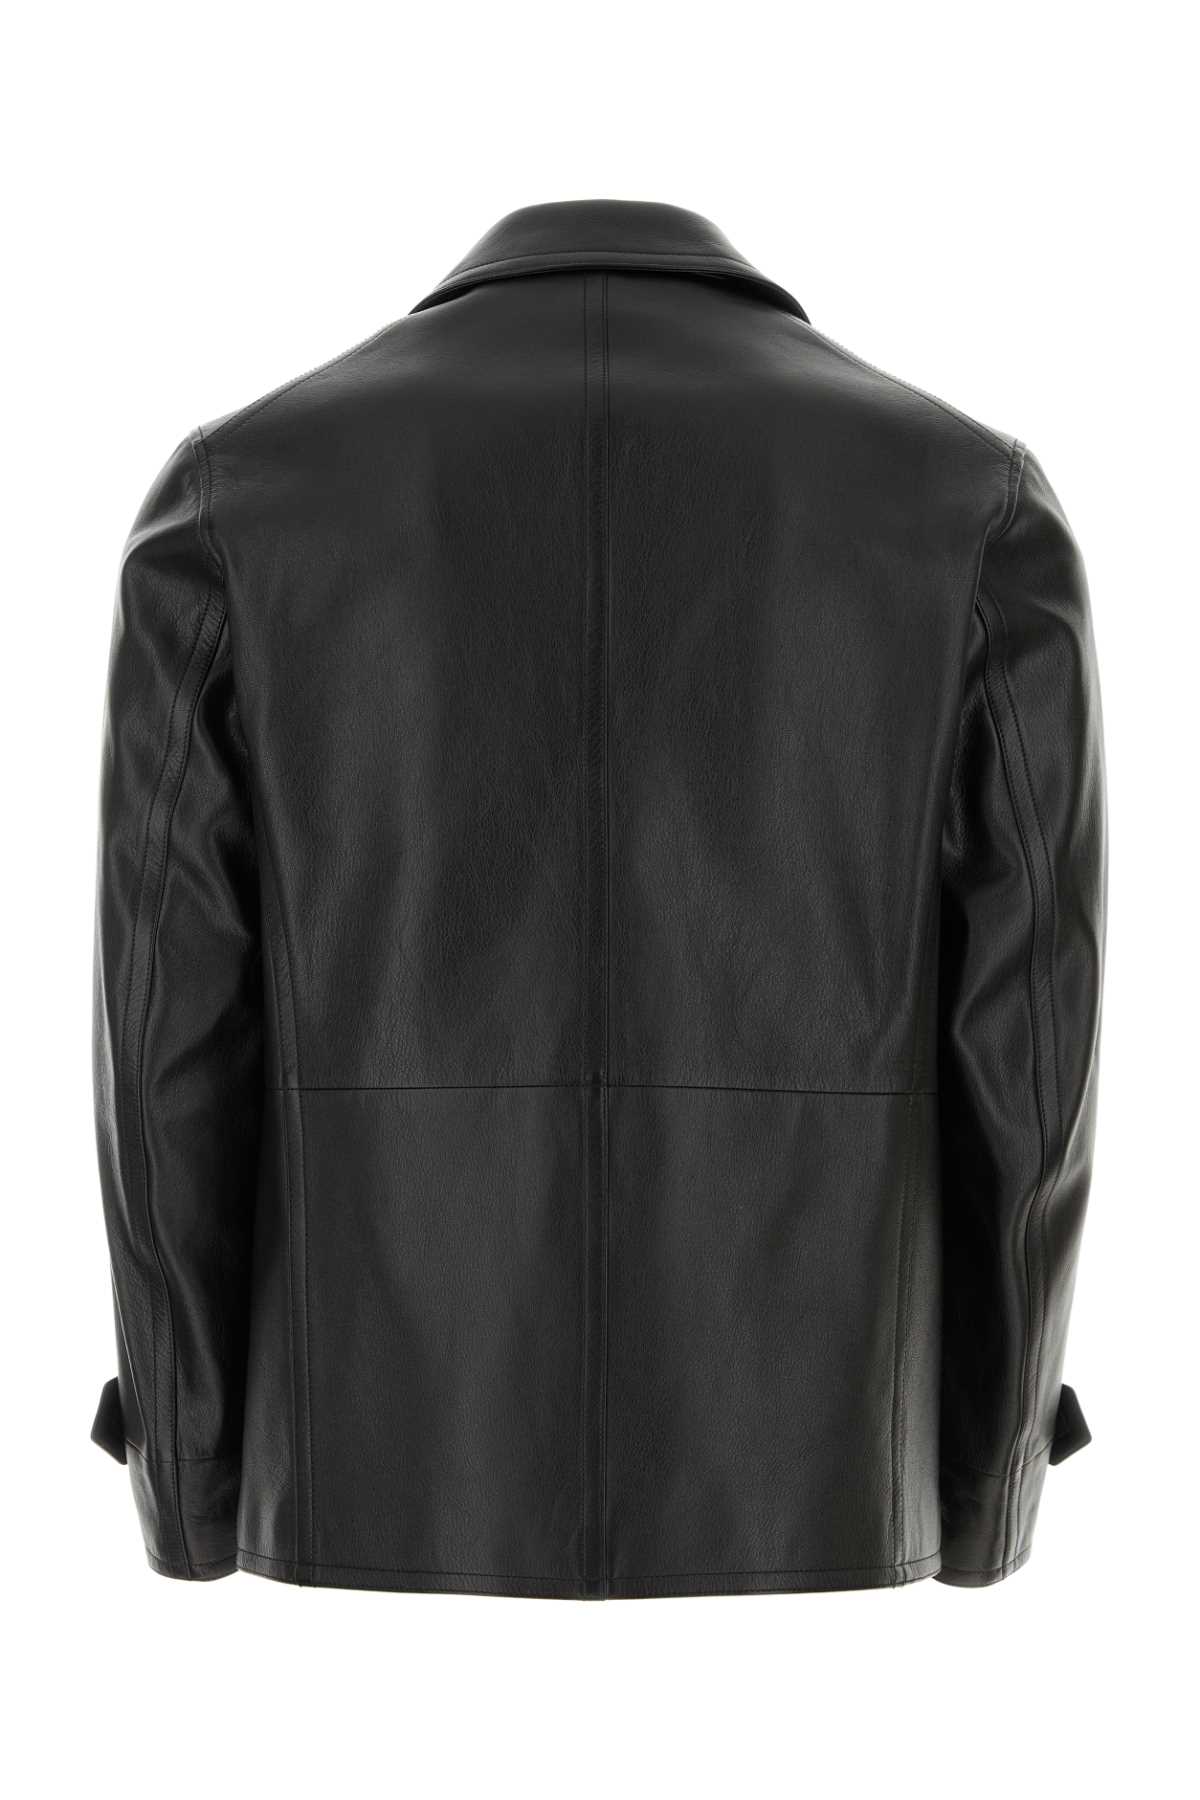 Shop Tom Ford Black Leather Jacket